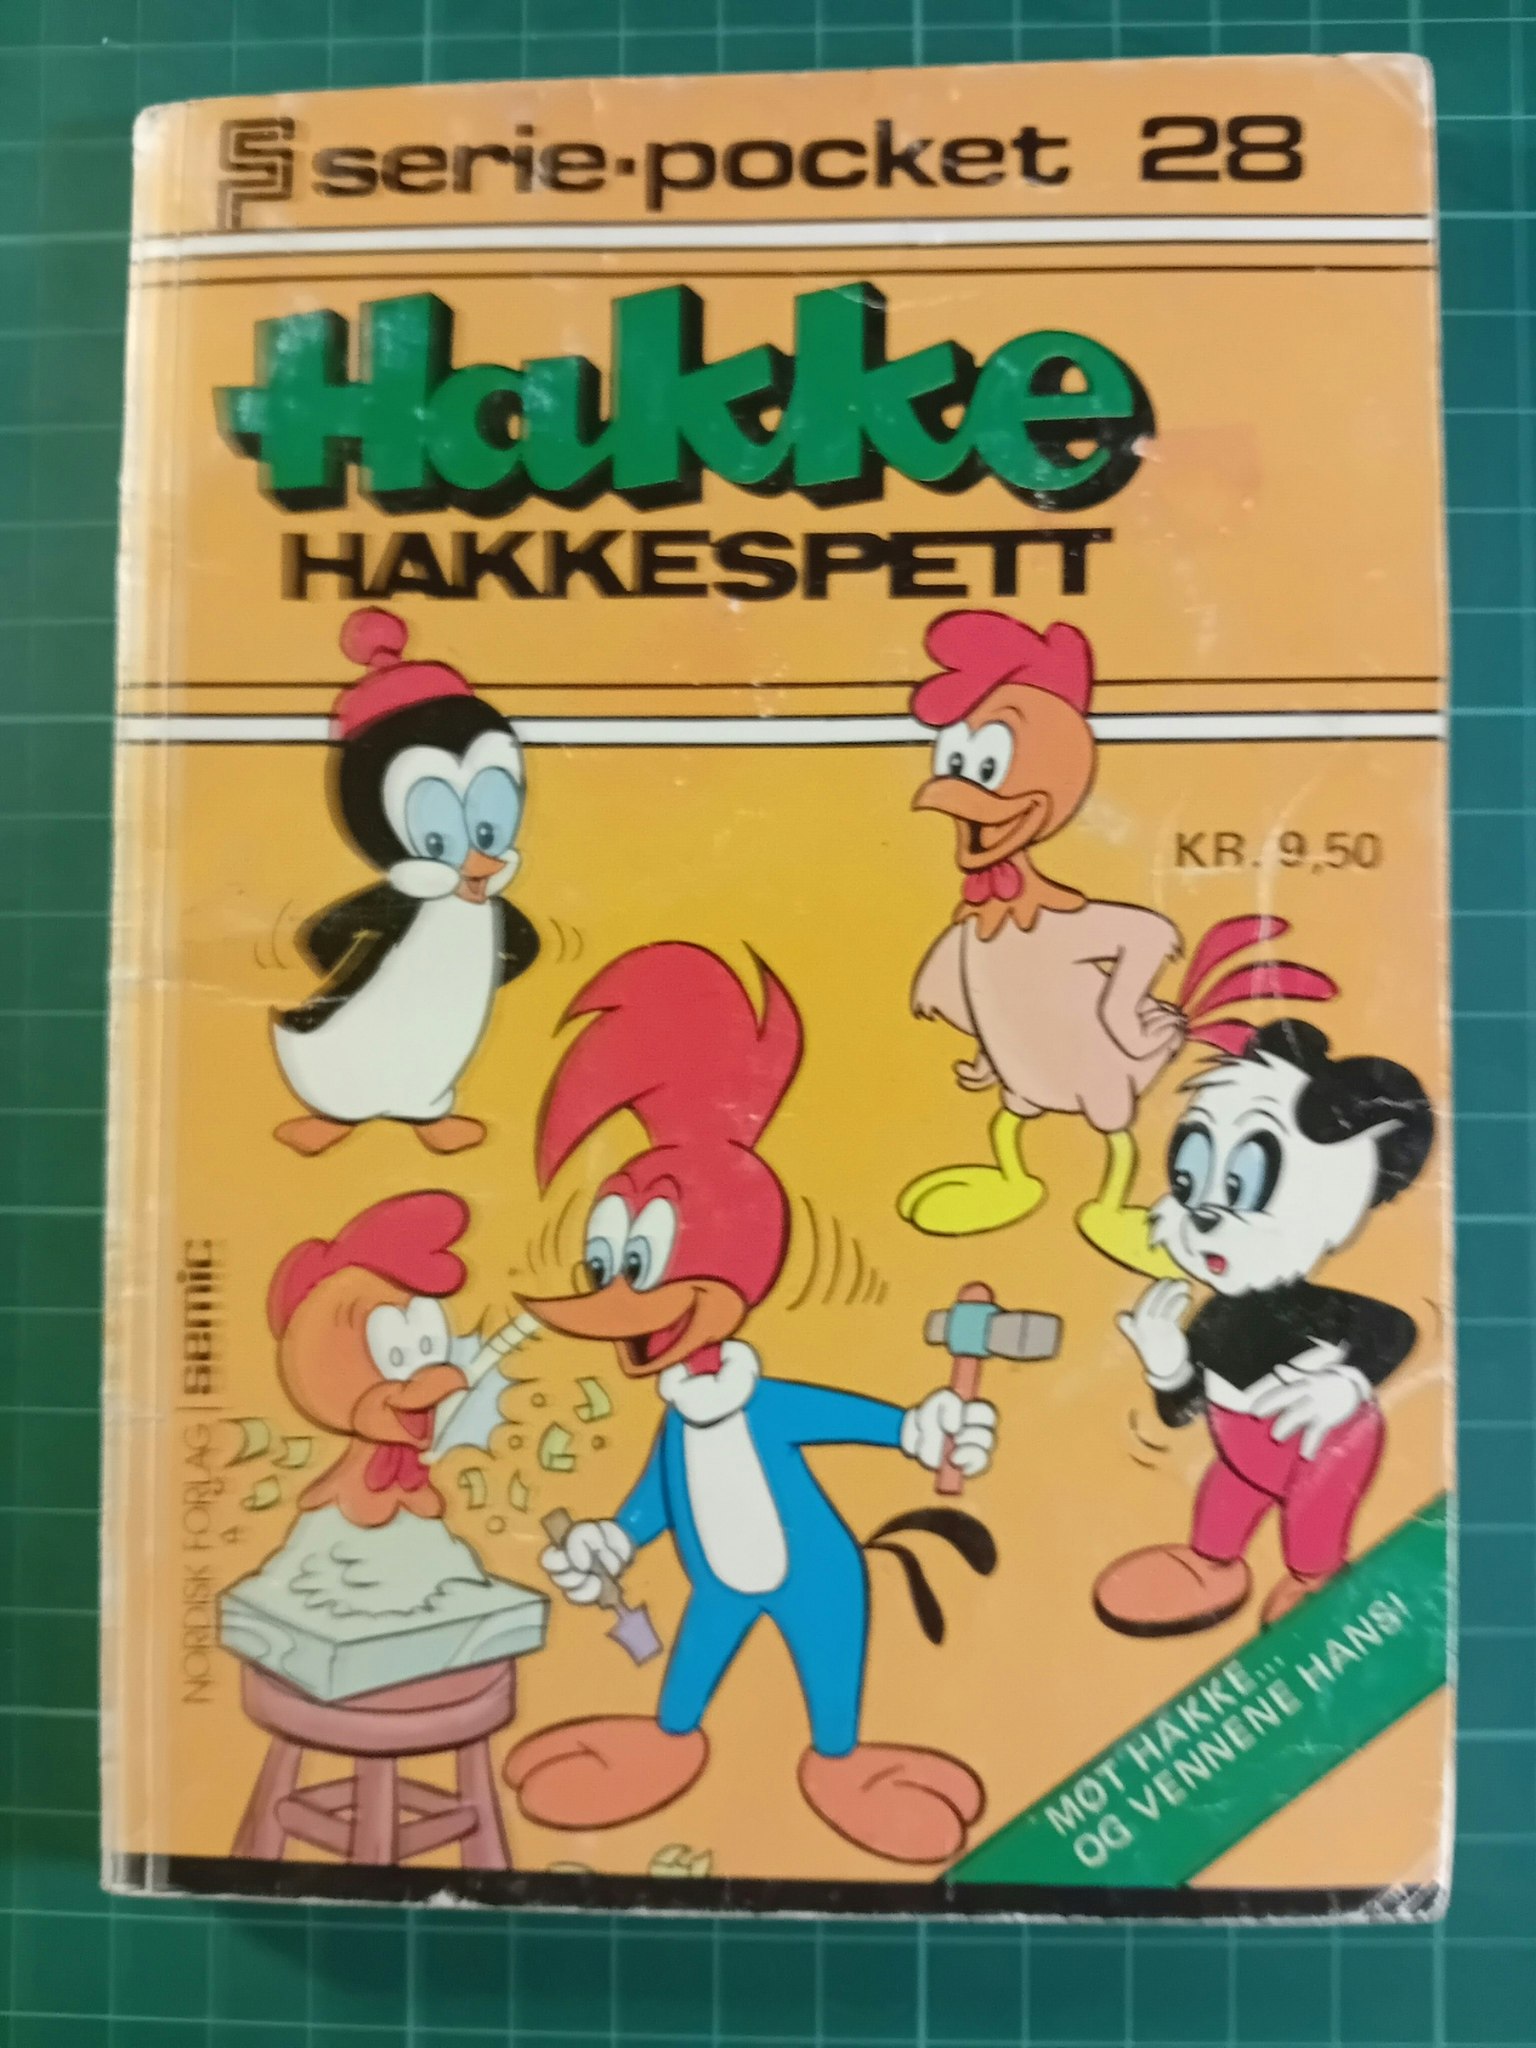 Serie-pocket 028 : Hakke Hakkespett